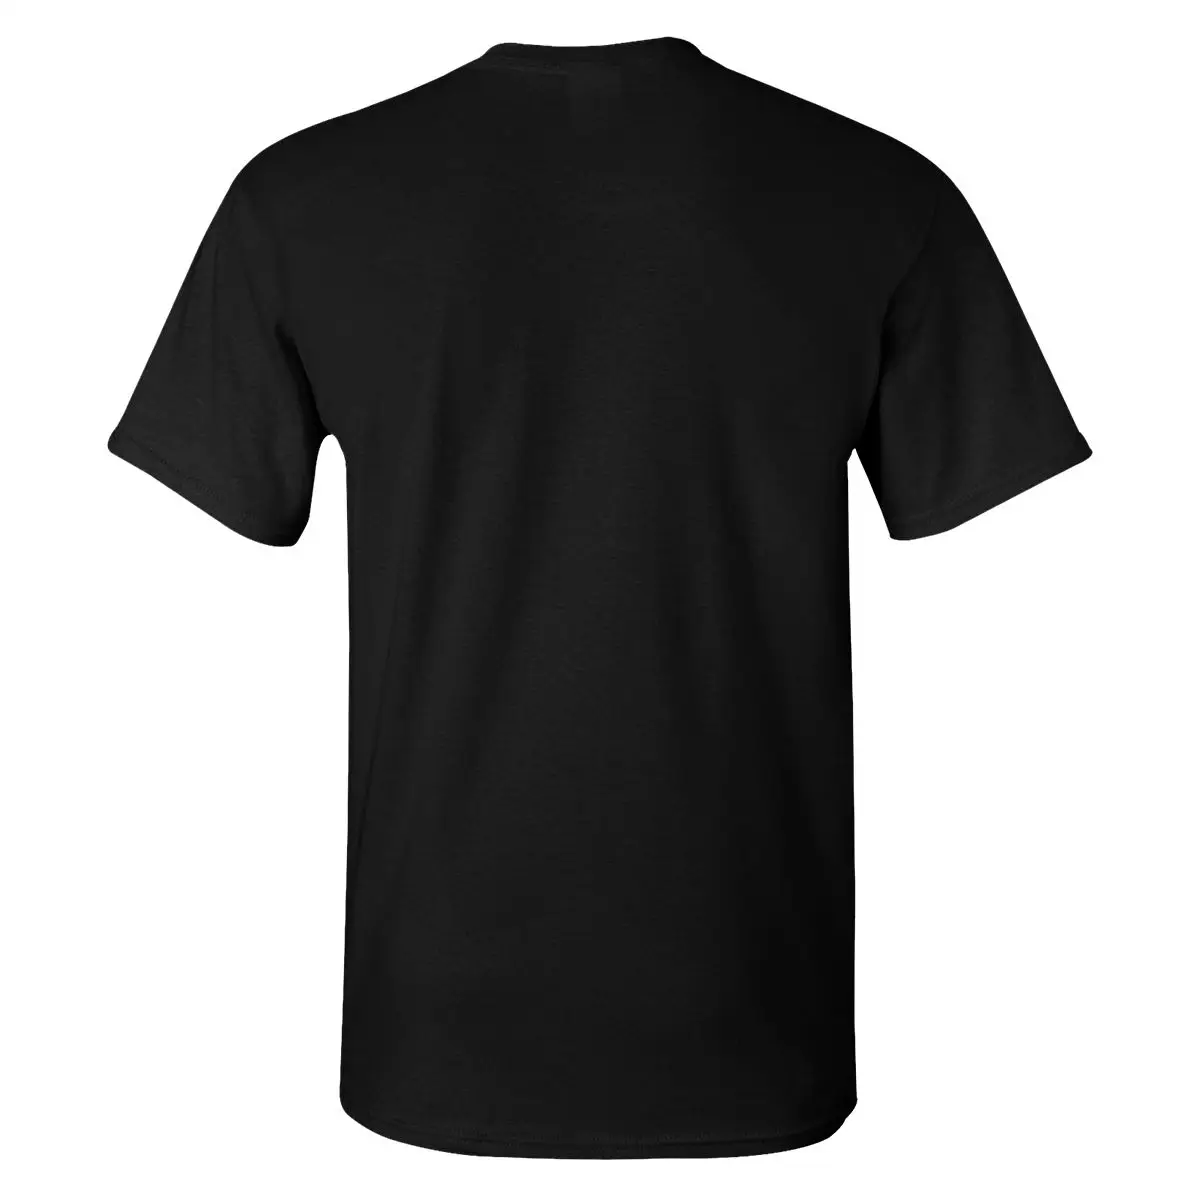 Homens T-Shirt Ela Ra Pop Arte Pura, T-Shirts spop catra arco brilho Original de Algodão de Impressão Camiseta de Mangas Curtas Tees Presente 3XL 4XL 5XL Imagem 3